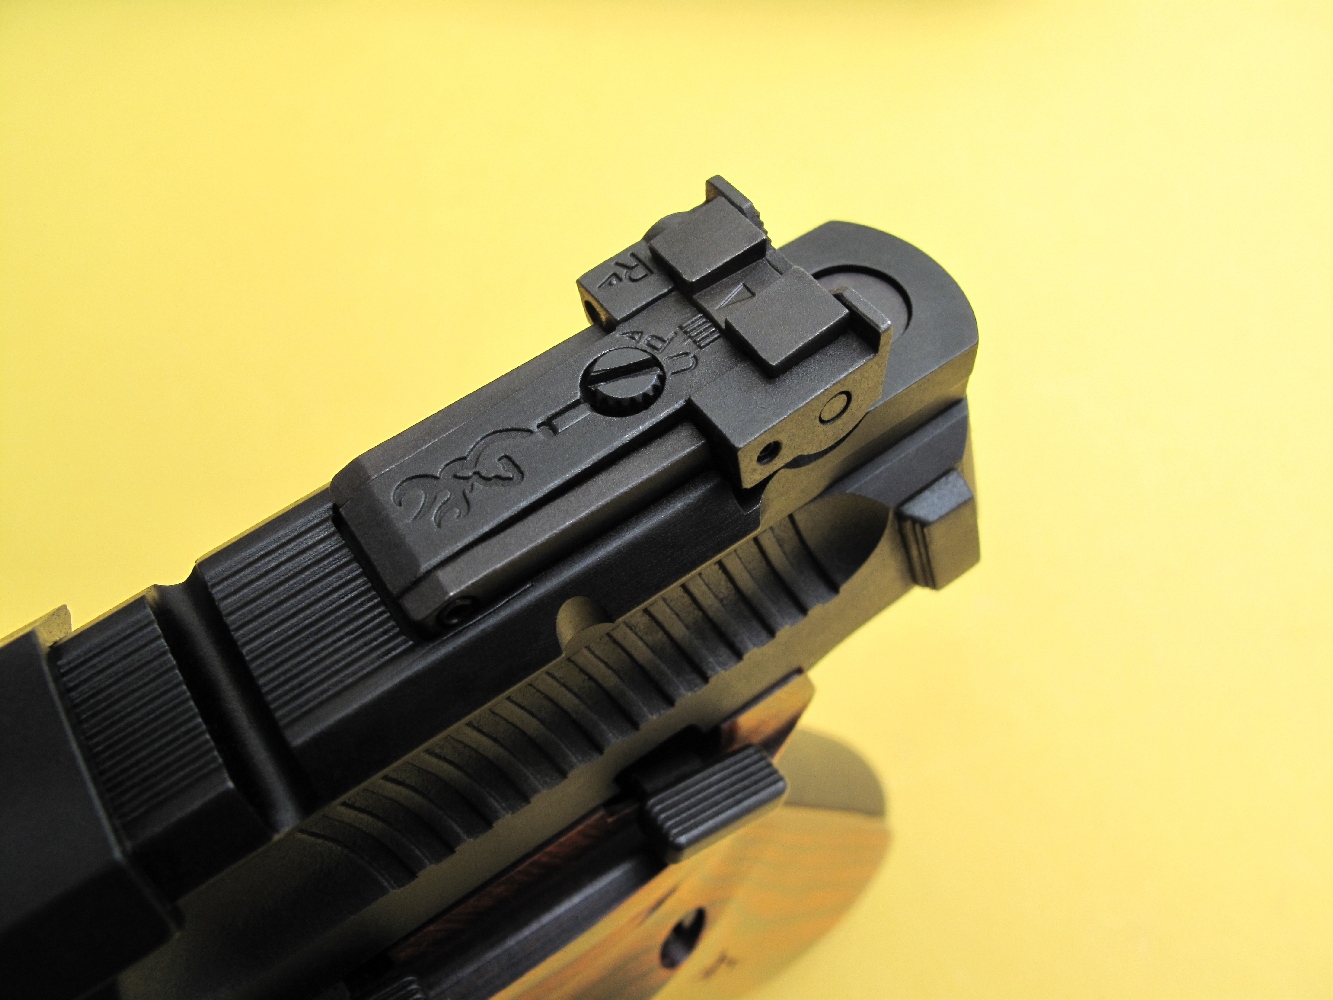 Ce pistolet dispose d’une hausse micrométrique dont on notera que le sens d’utilisation des vis est indiqué par des flèches et le positionnement en azimut repéré par une petite réglette.